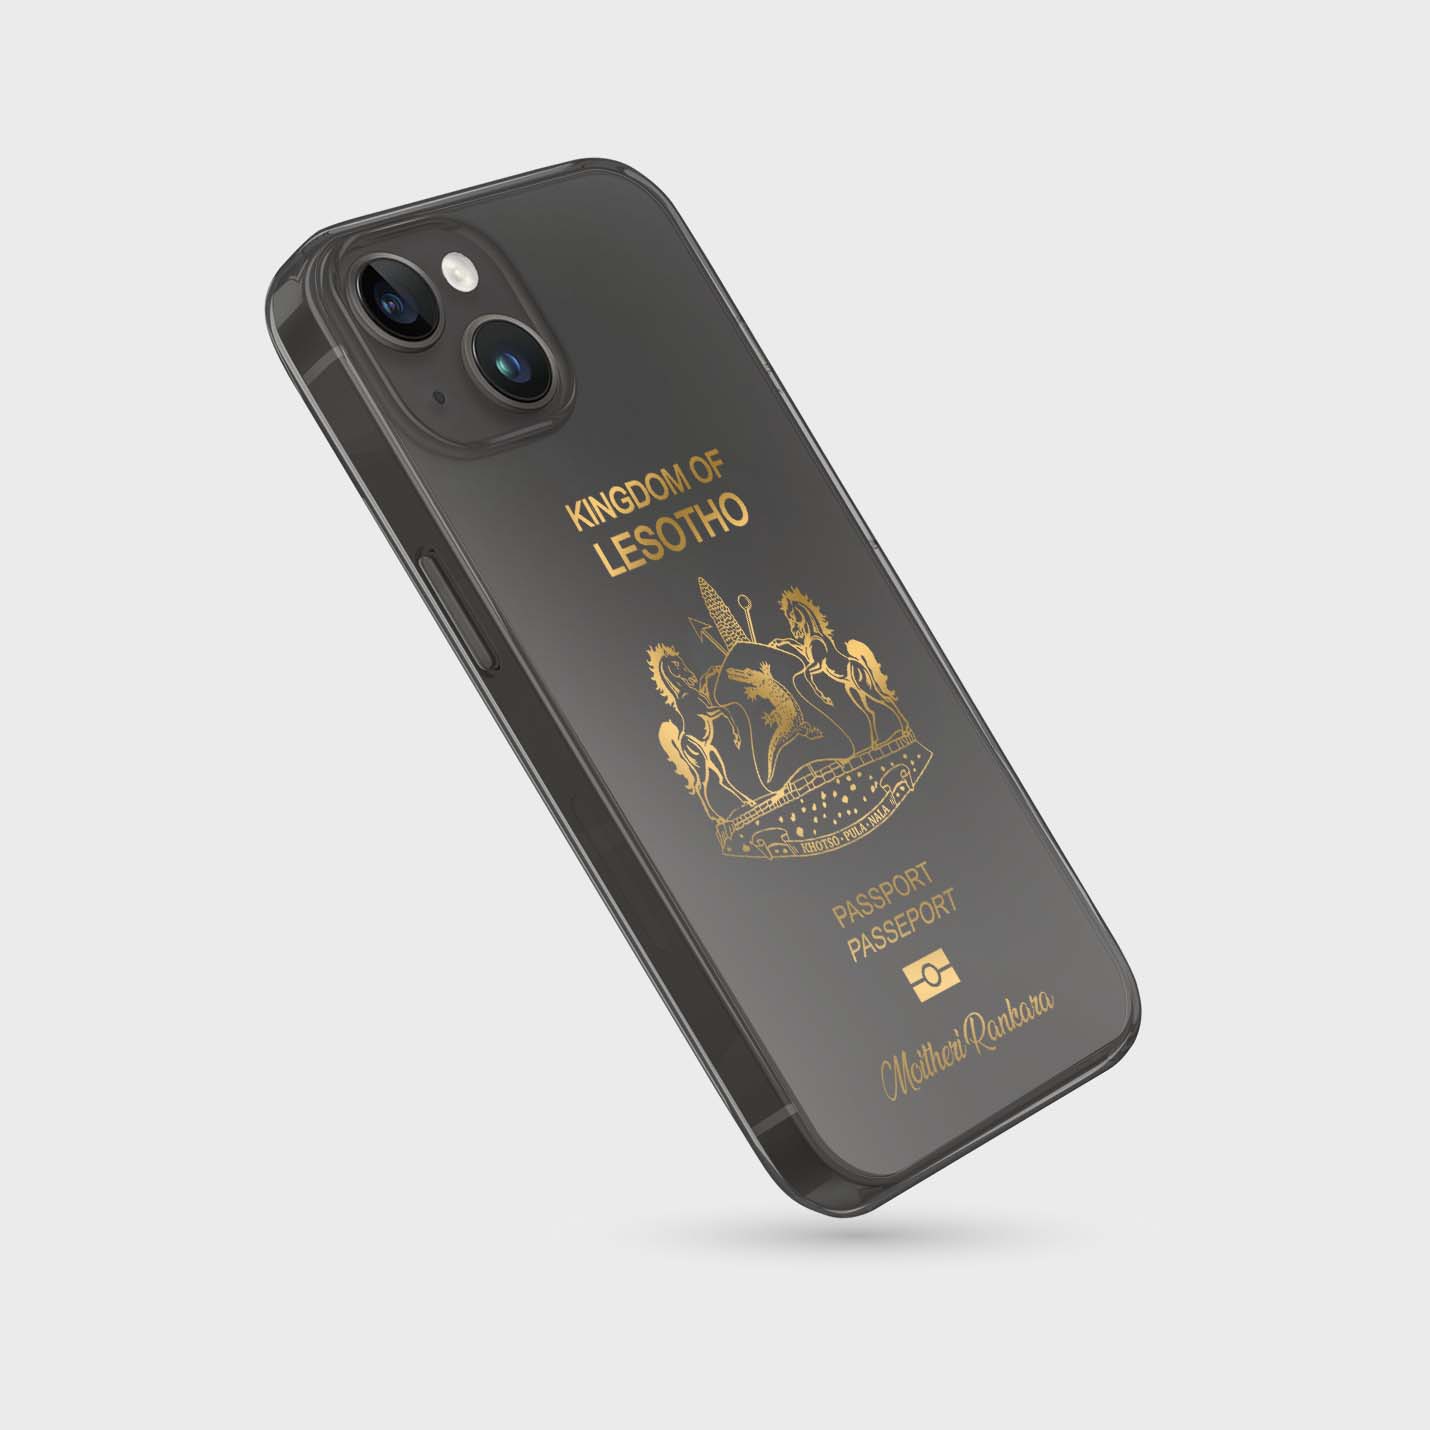 Handyhüllen mit Reisepass - Lesotho - 1instaphone